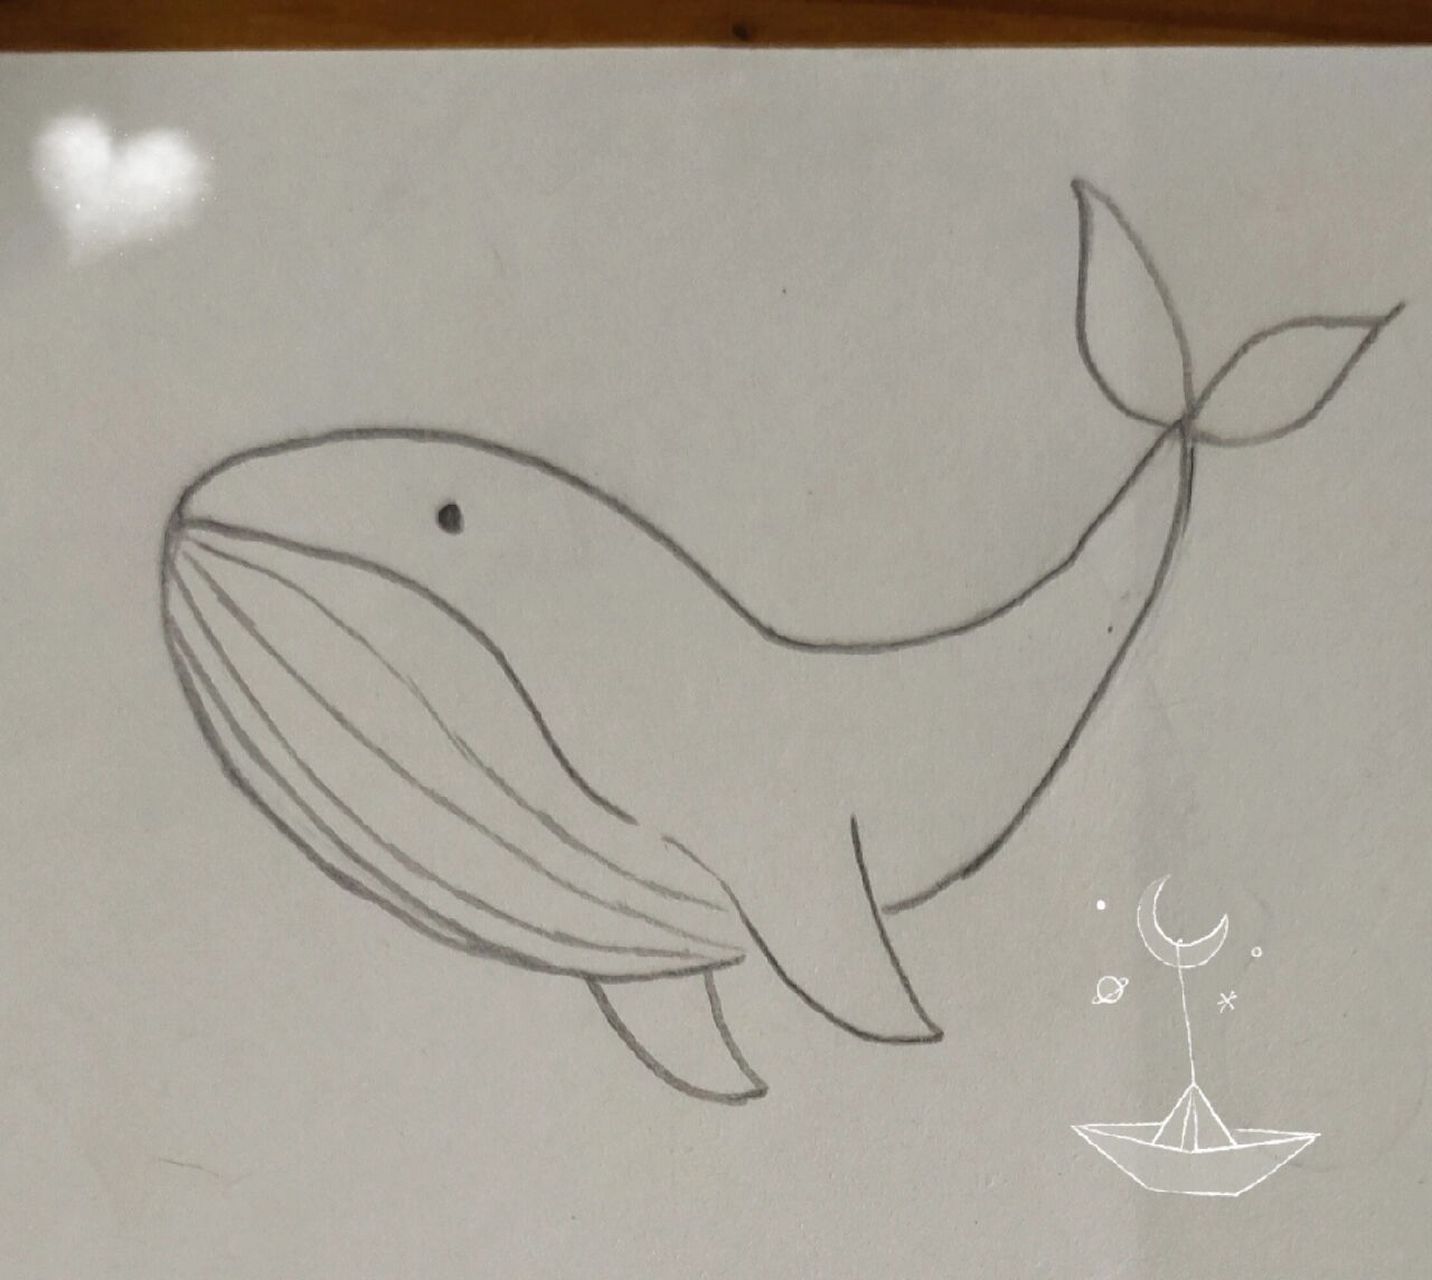 大鲸鱼简笔画图片图片